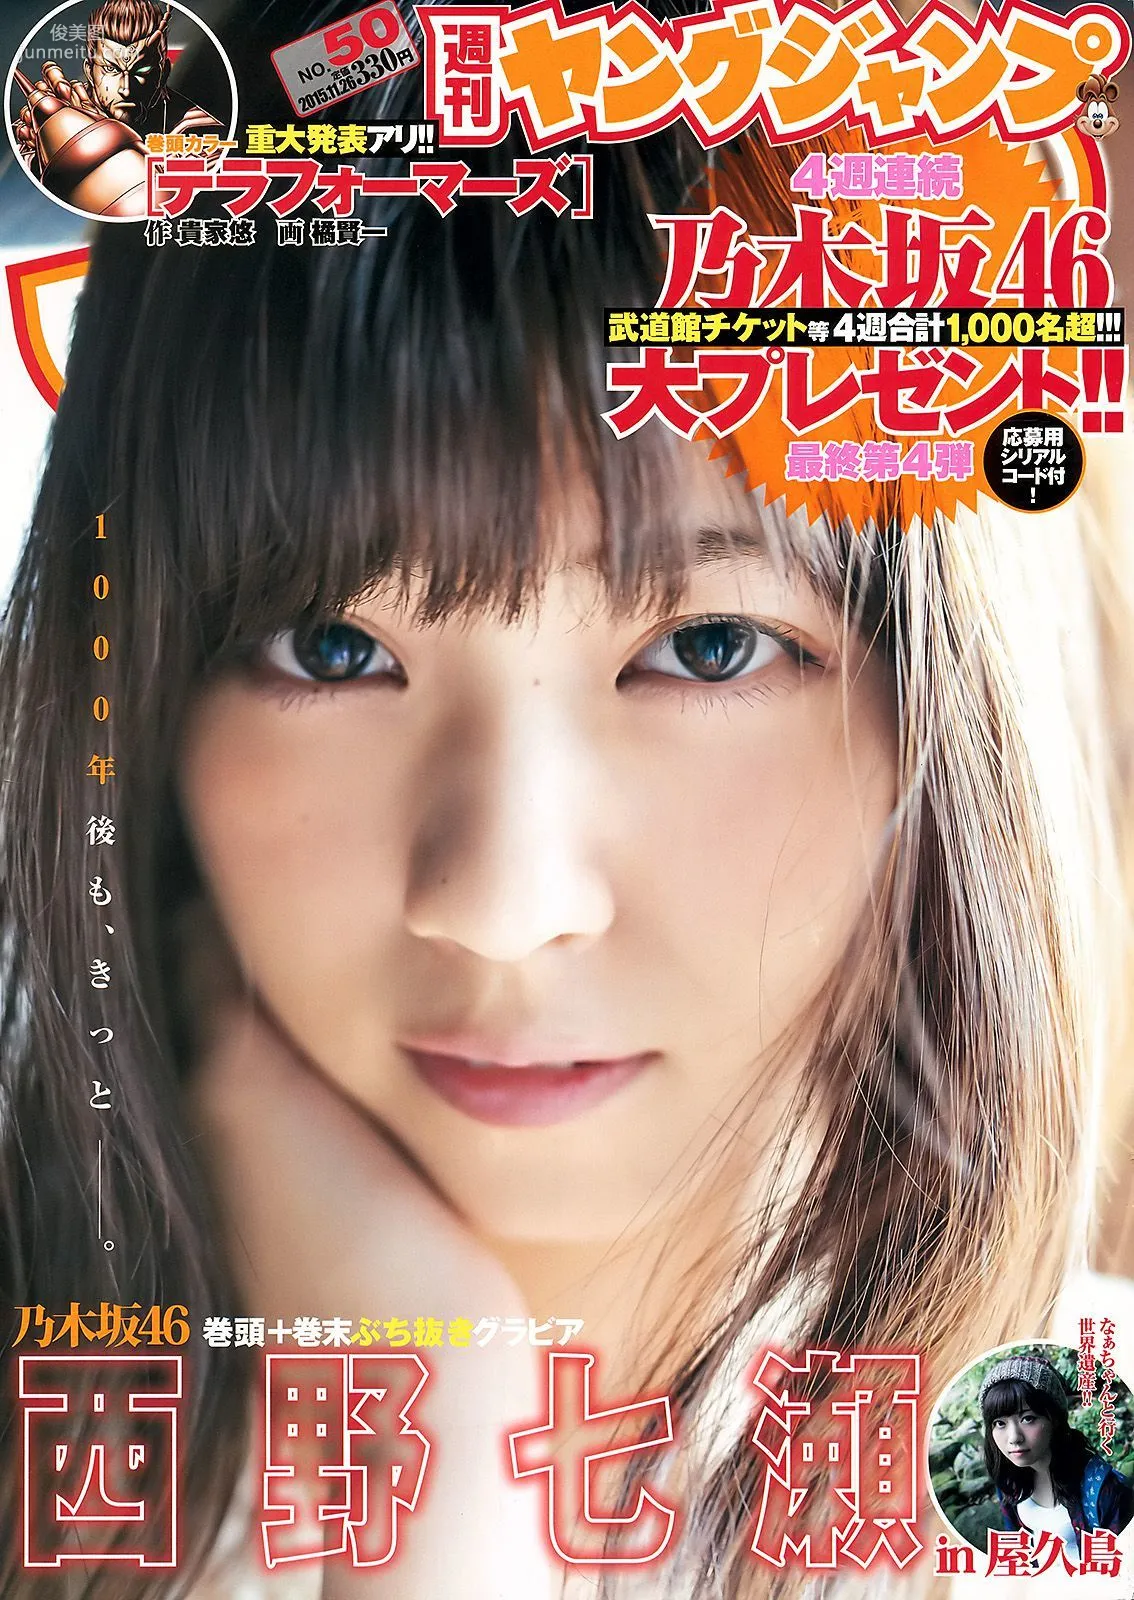 西野七瀬《麓の章》 [Weekly Young Jump] 2015年No.50 写真杂志1